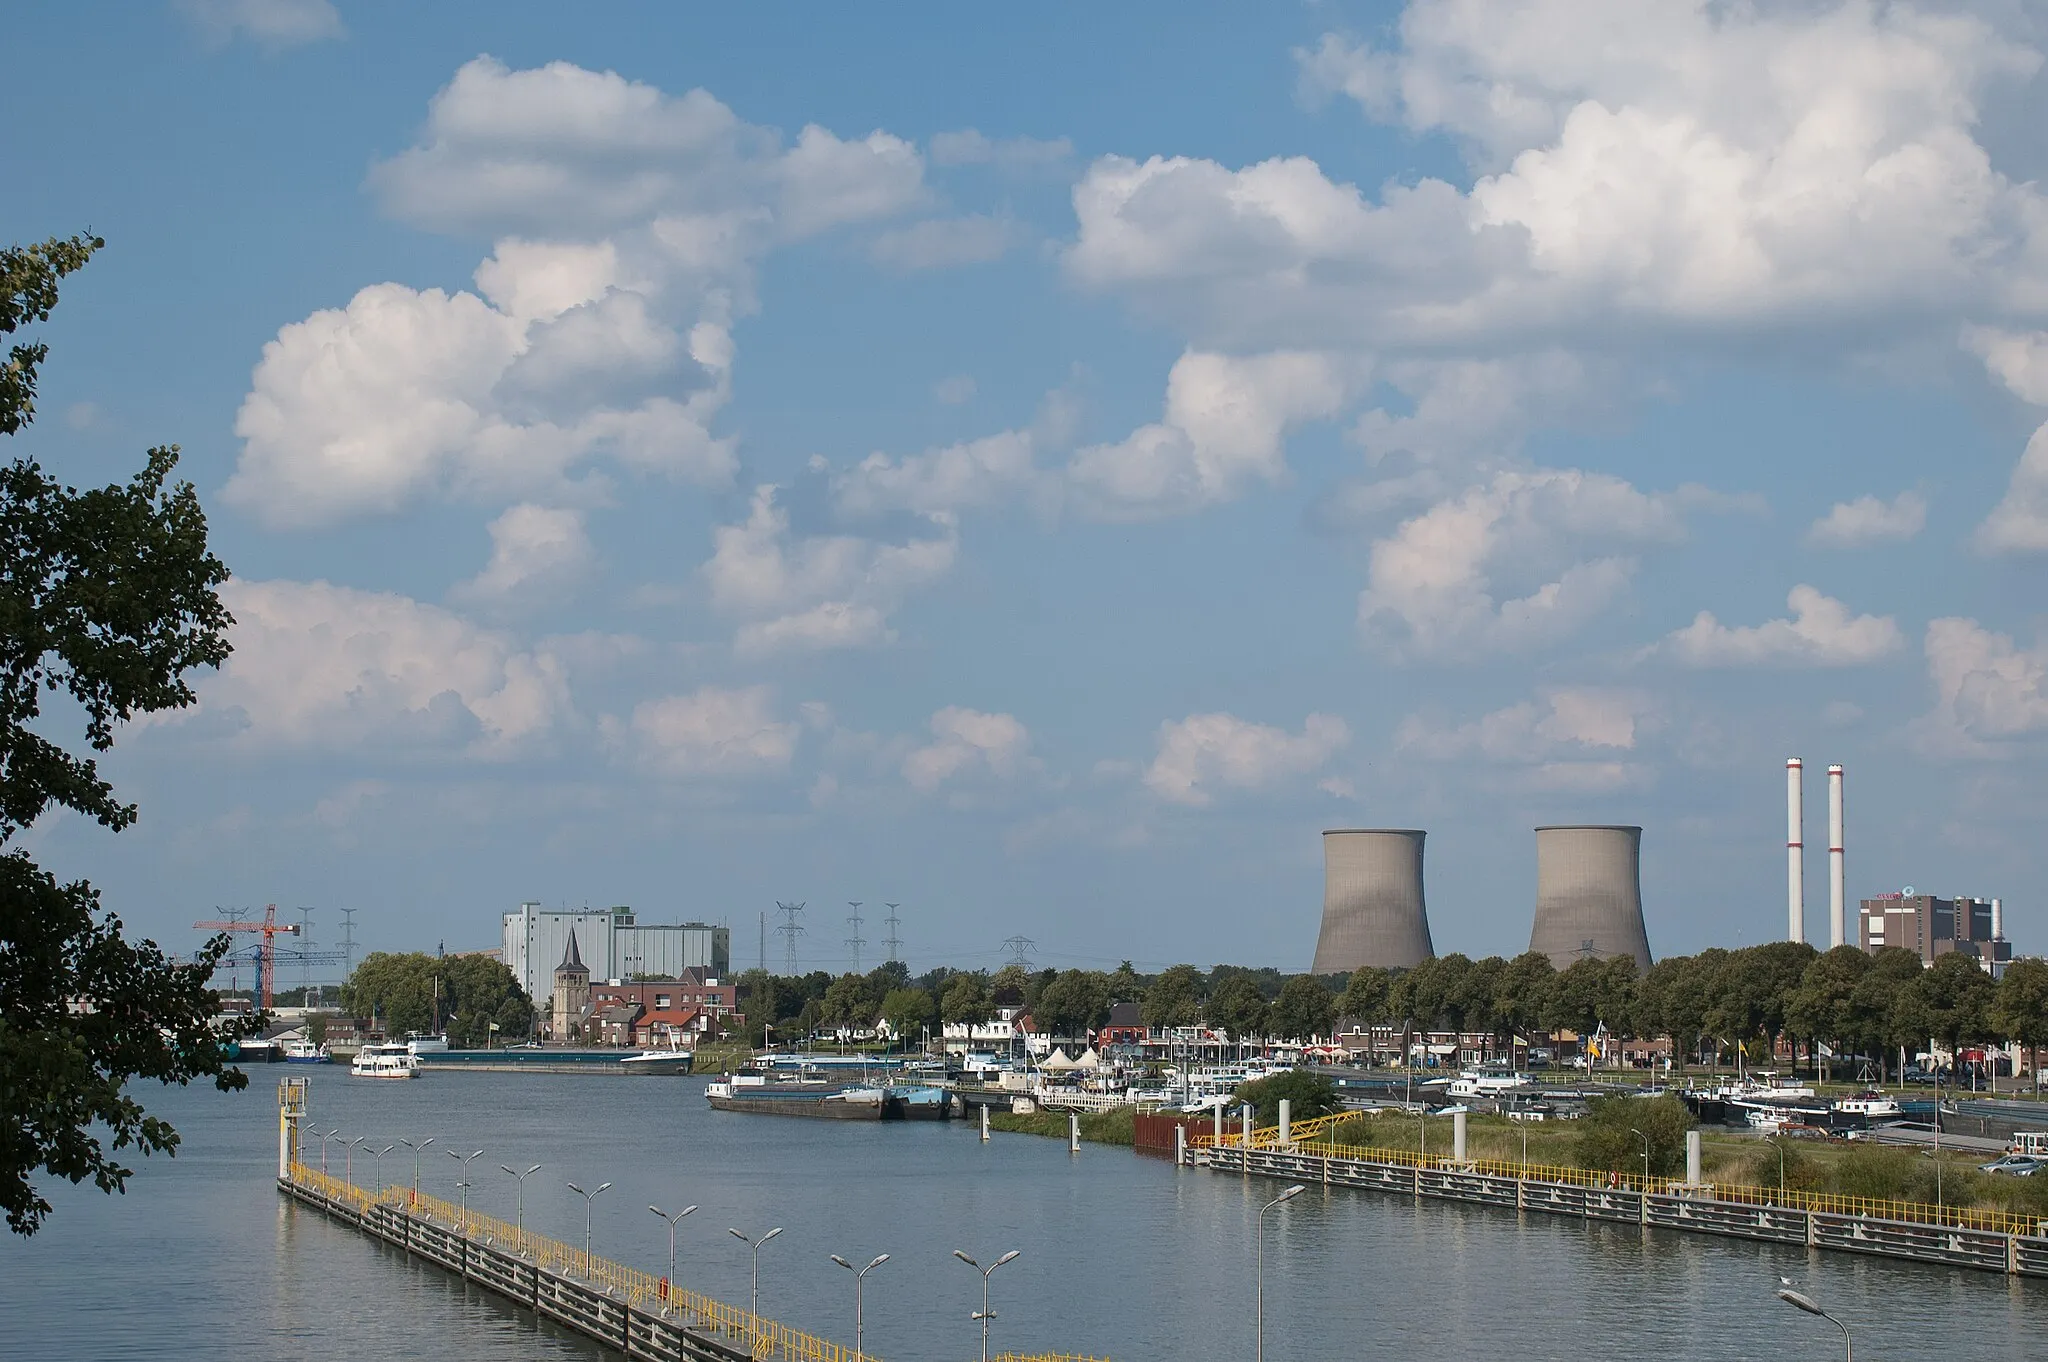 Photo showing: Blick von der Julianakanal-Schleuse in Maasbracht aus über Hafen und Ort Maasbracht in den Niederlanden, im Hintergrund das Gaskraftwerk Clauscentrale